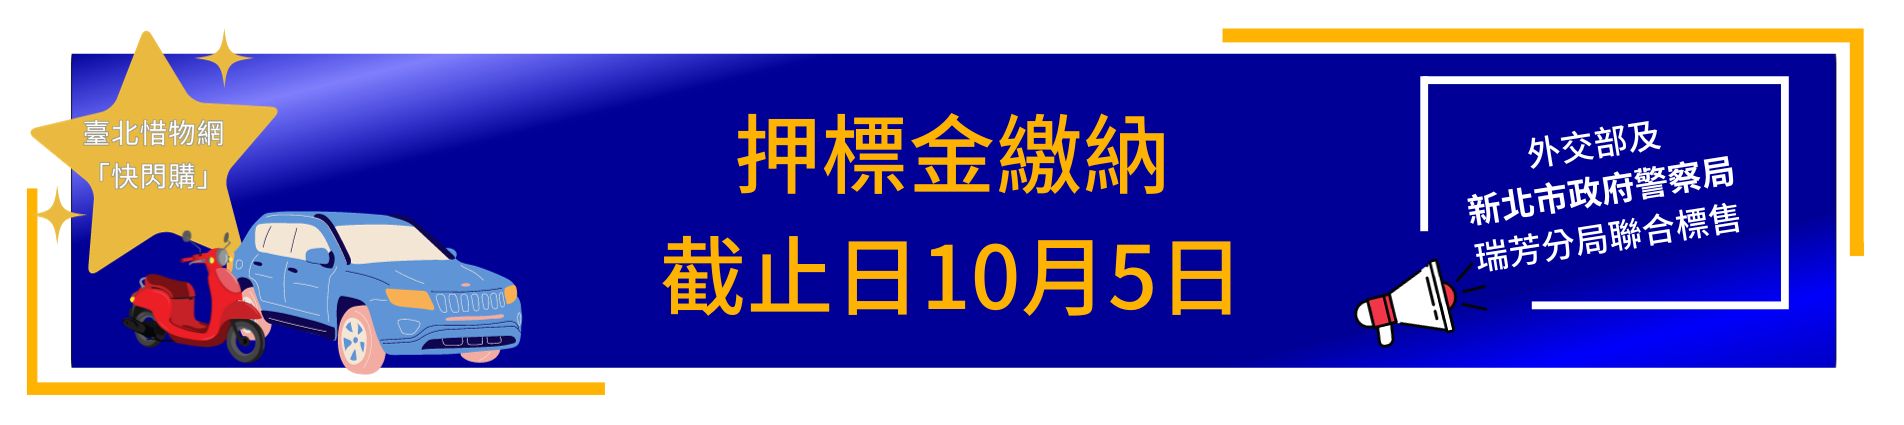 112-6 汰換汽機車聯合標售押標金繳納截止日10月5日